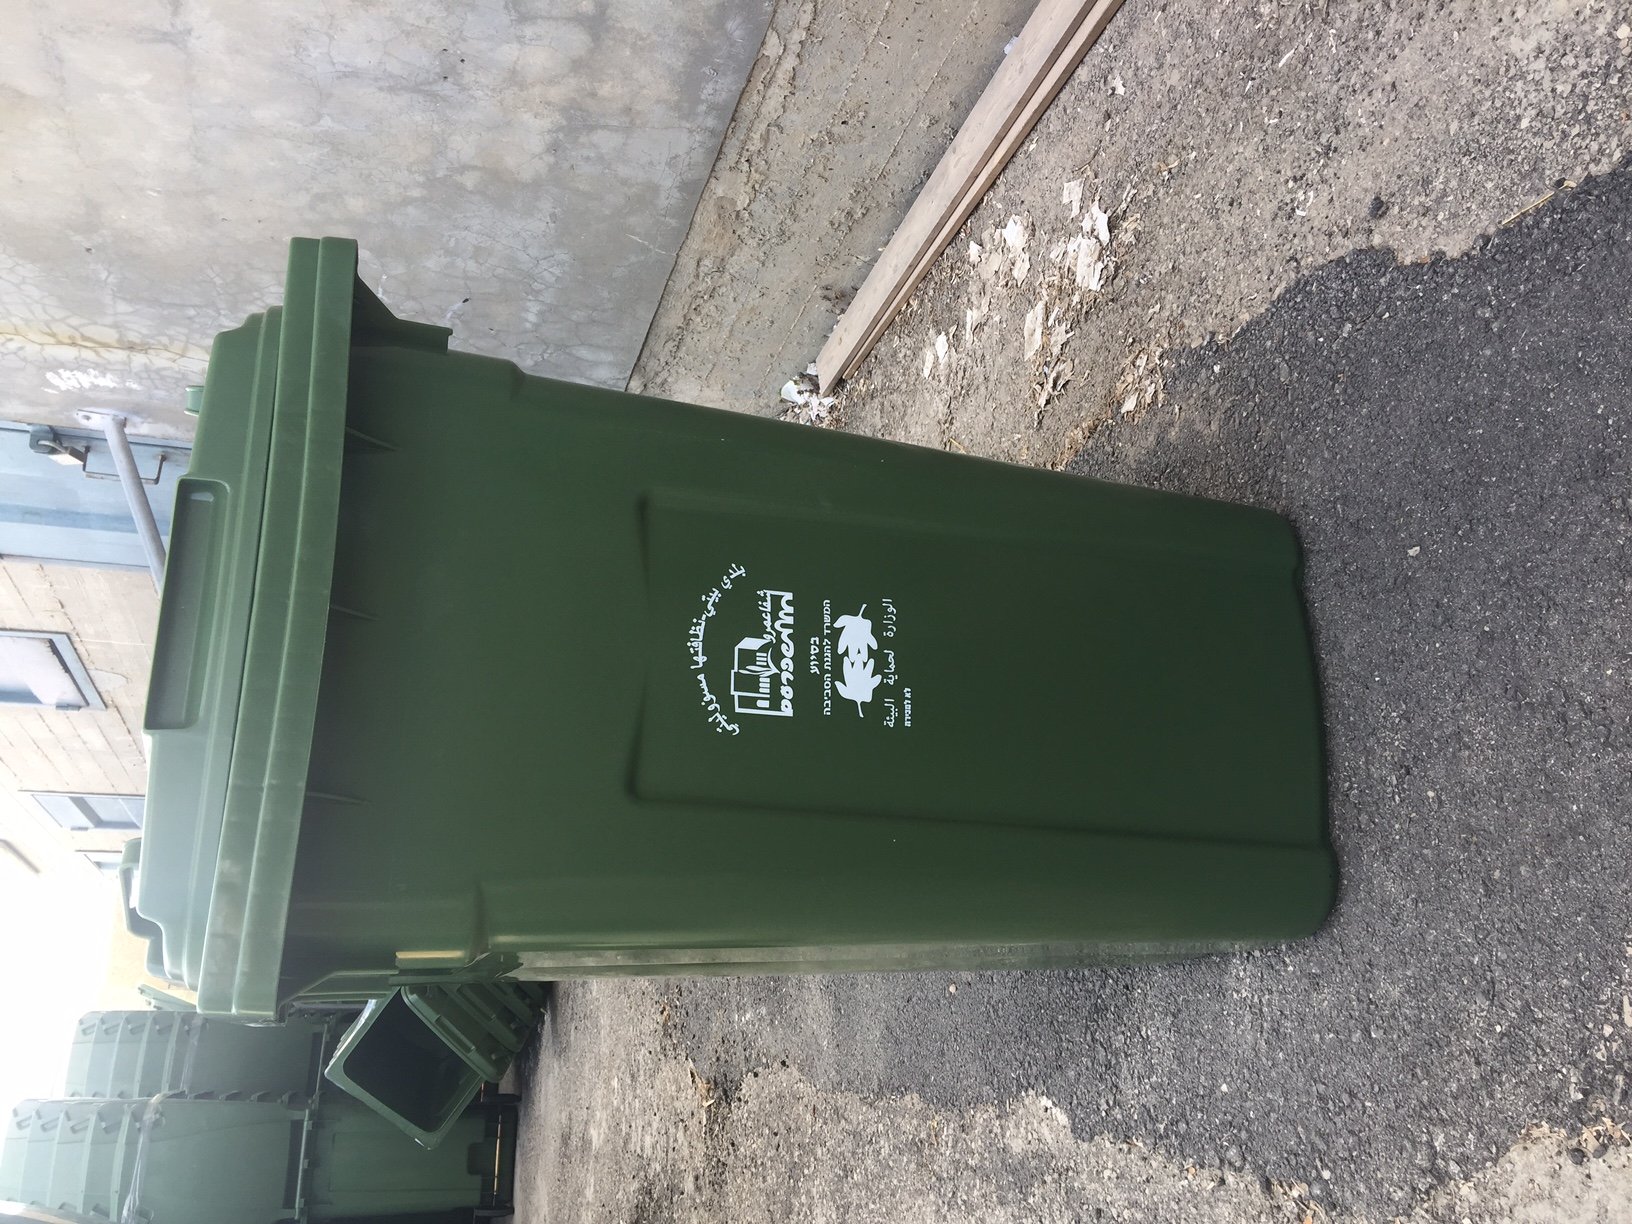 ضمن مشروع "شفاعمرو خليها نظيفة" .. بلدية شفاعمرو تبدأ حملة تبديل حاويات النفايات بكلفة 1.1 مليون شيكل-1